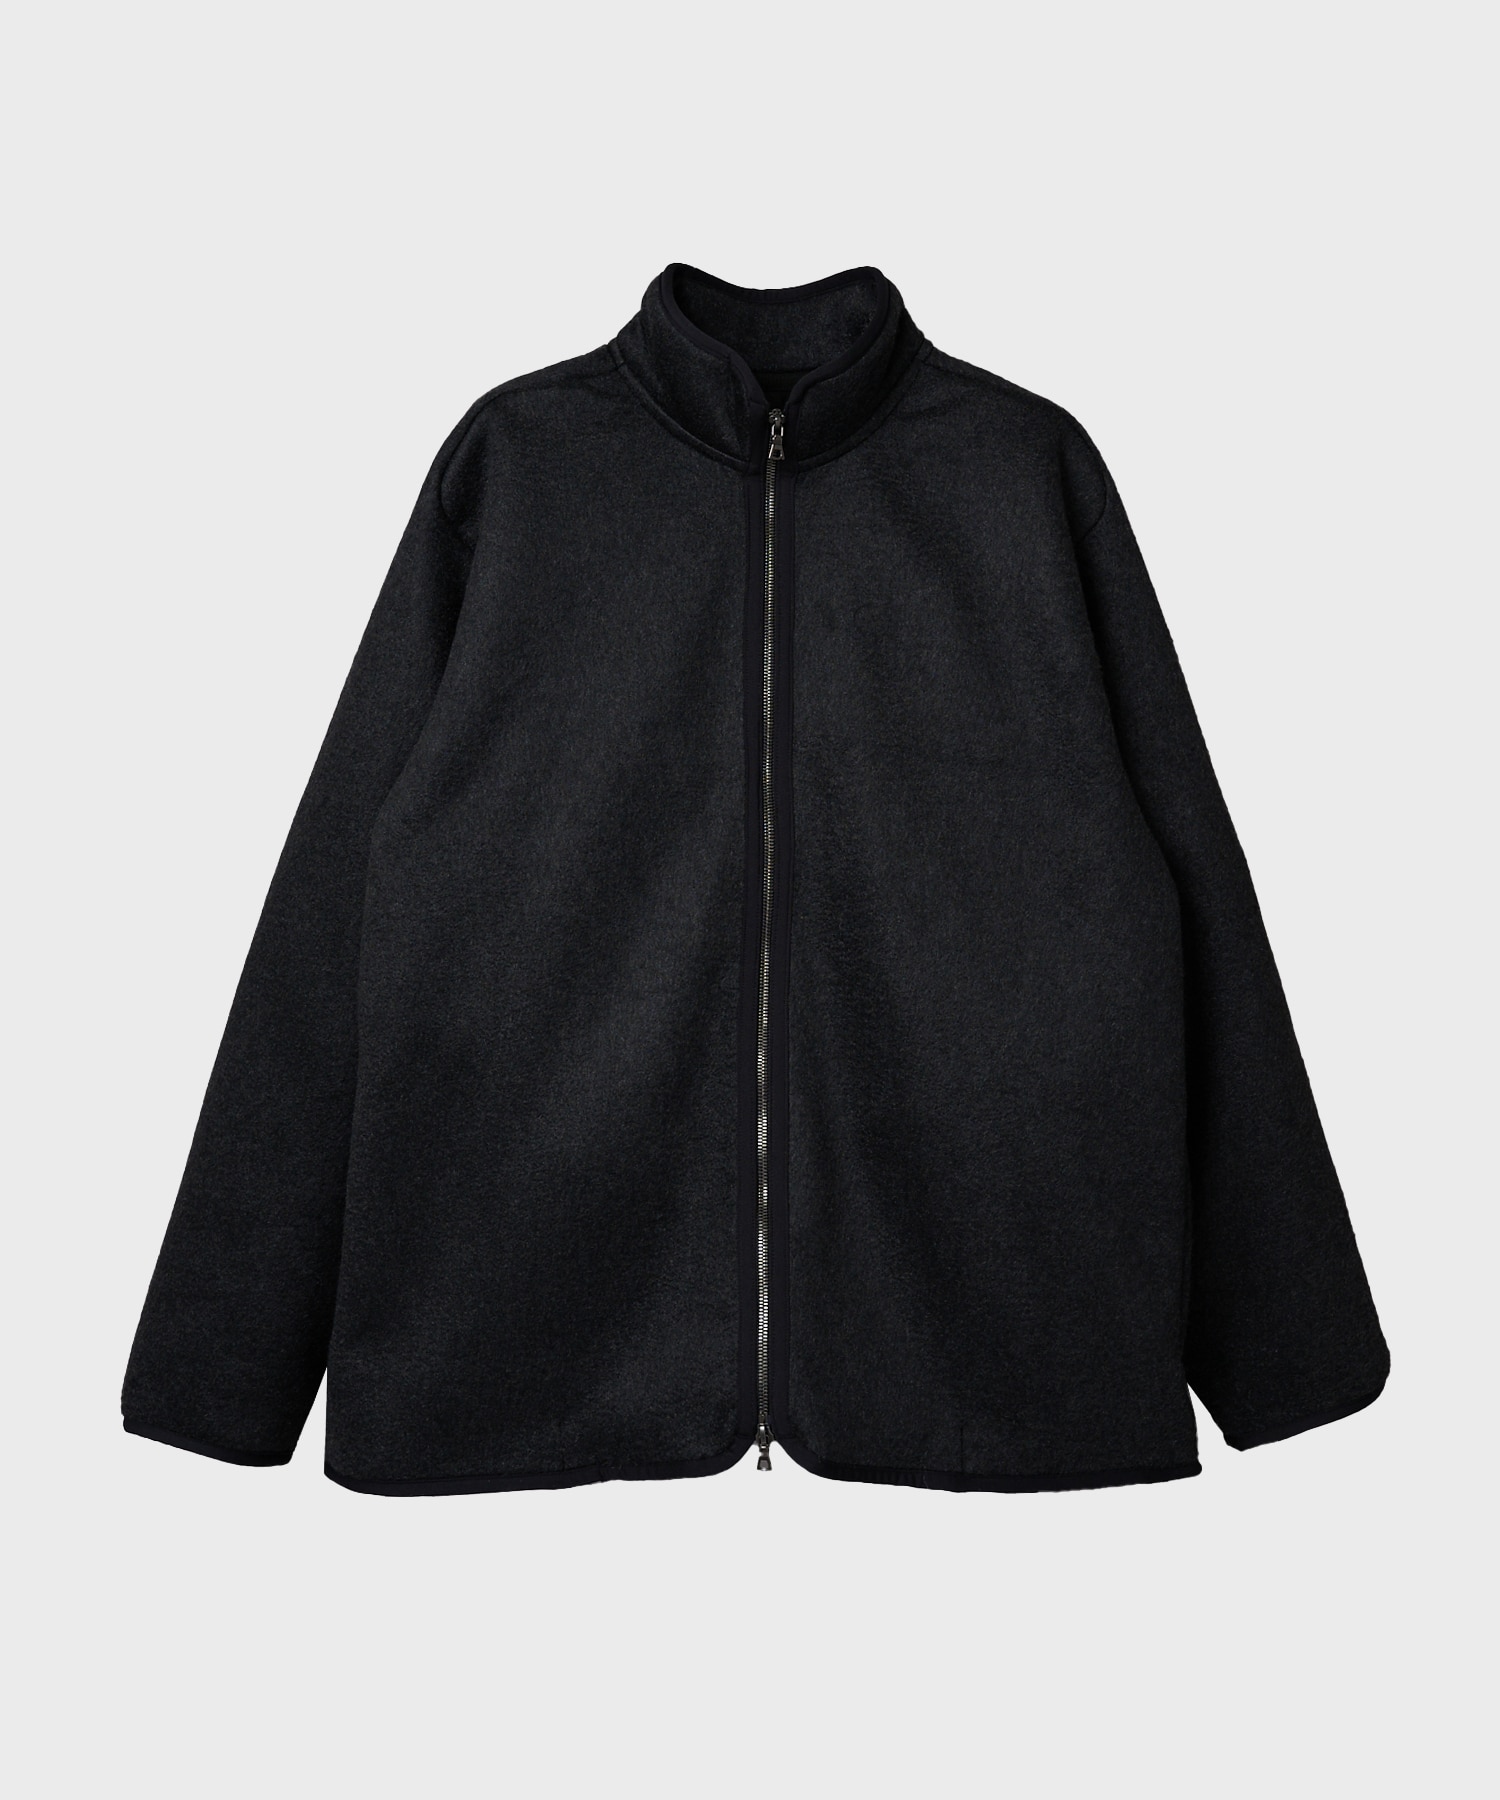 【新品タグ付】blurhms Pe/Silk Fleece ZIP Jacketよろしくお願いいたします